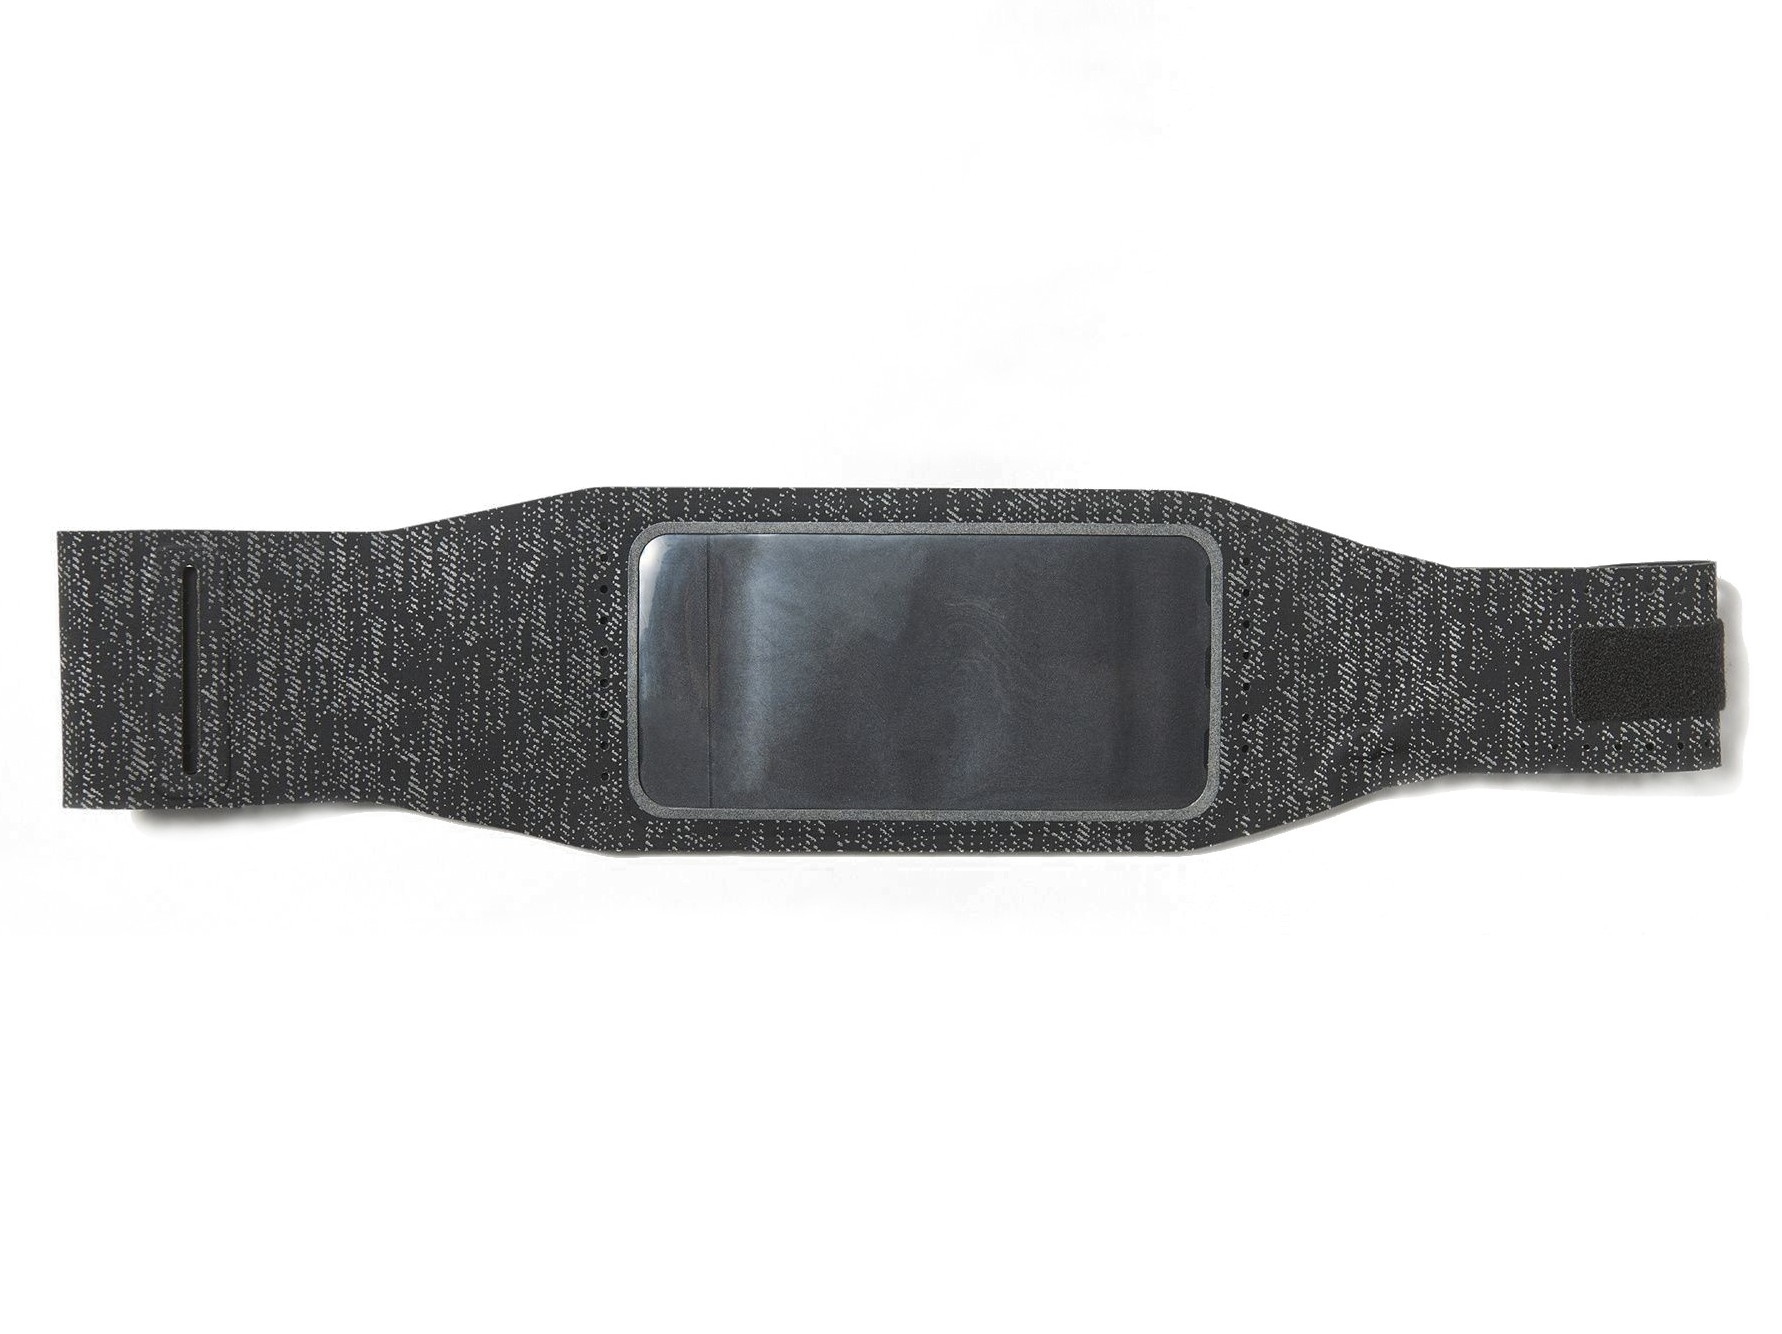 حزام رياضي أسود من أديداس للهواتف الذكية حتى 5.5 بوصة